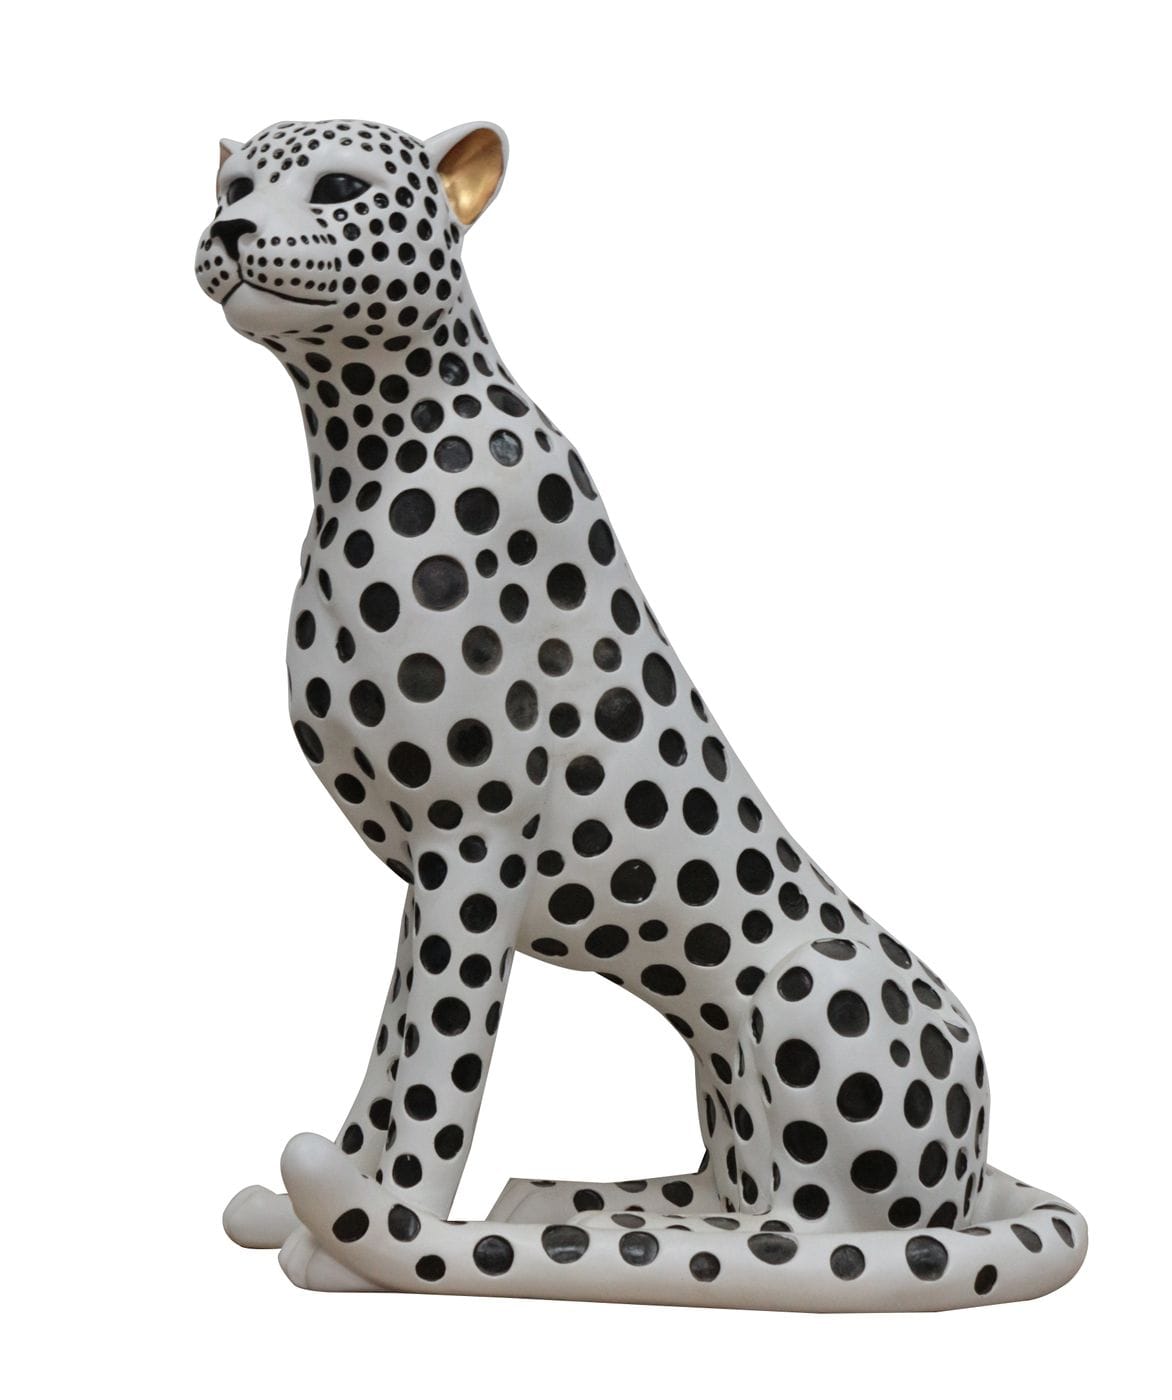 Modrest Snow Leopard – White & Black Sculpture